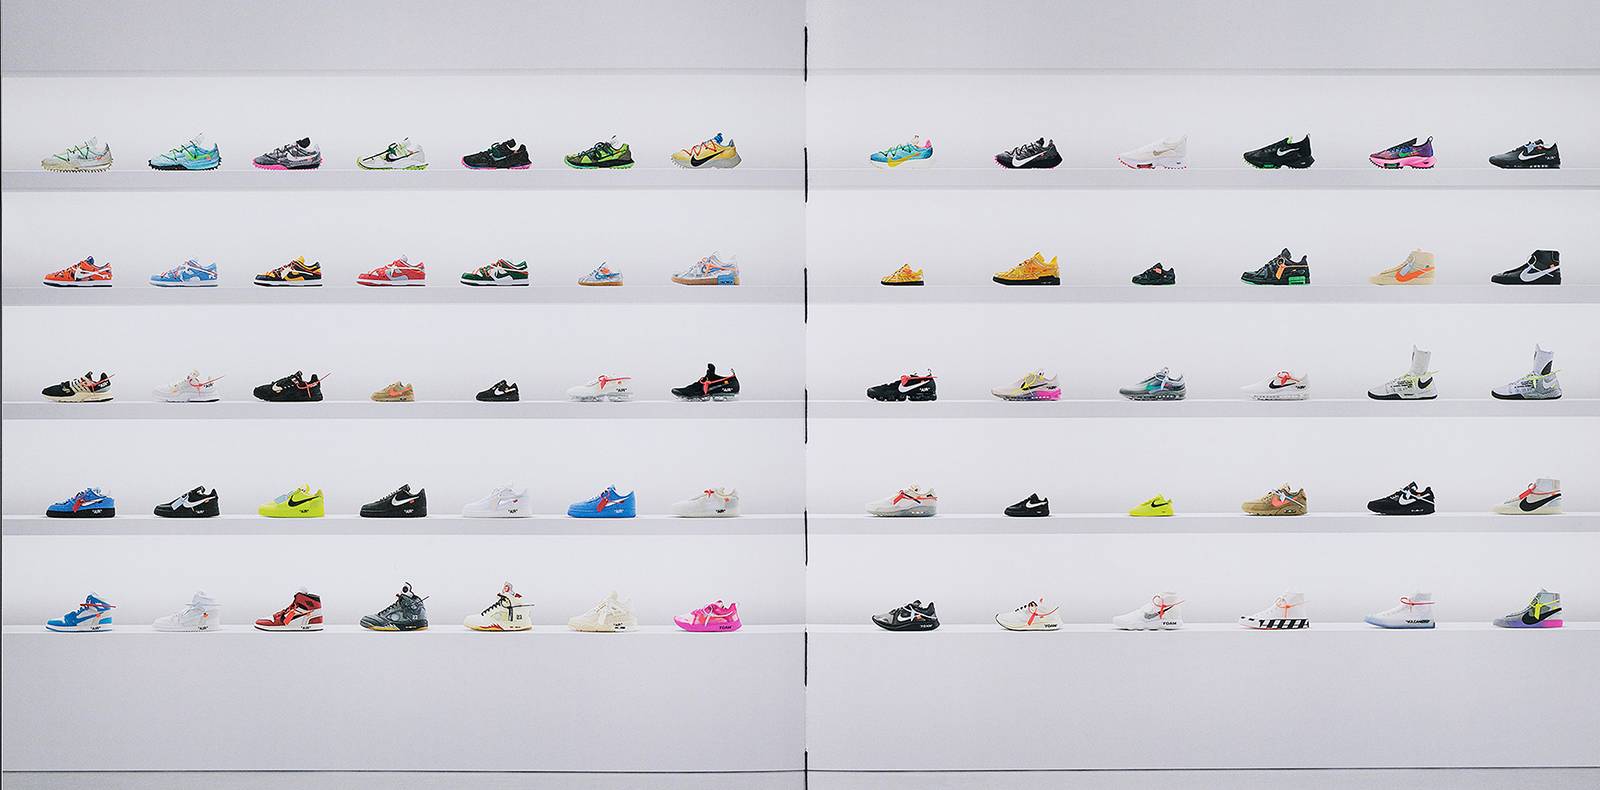 Nike x Virgil Abloh : Taschen retrace leur collaboration iconique